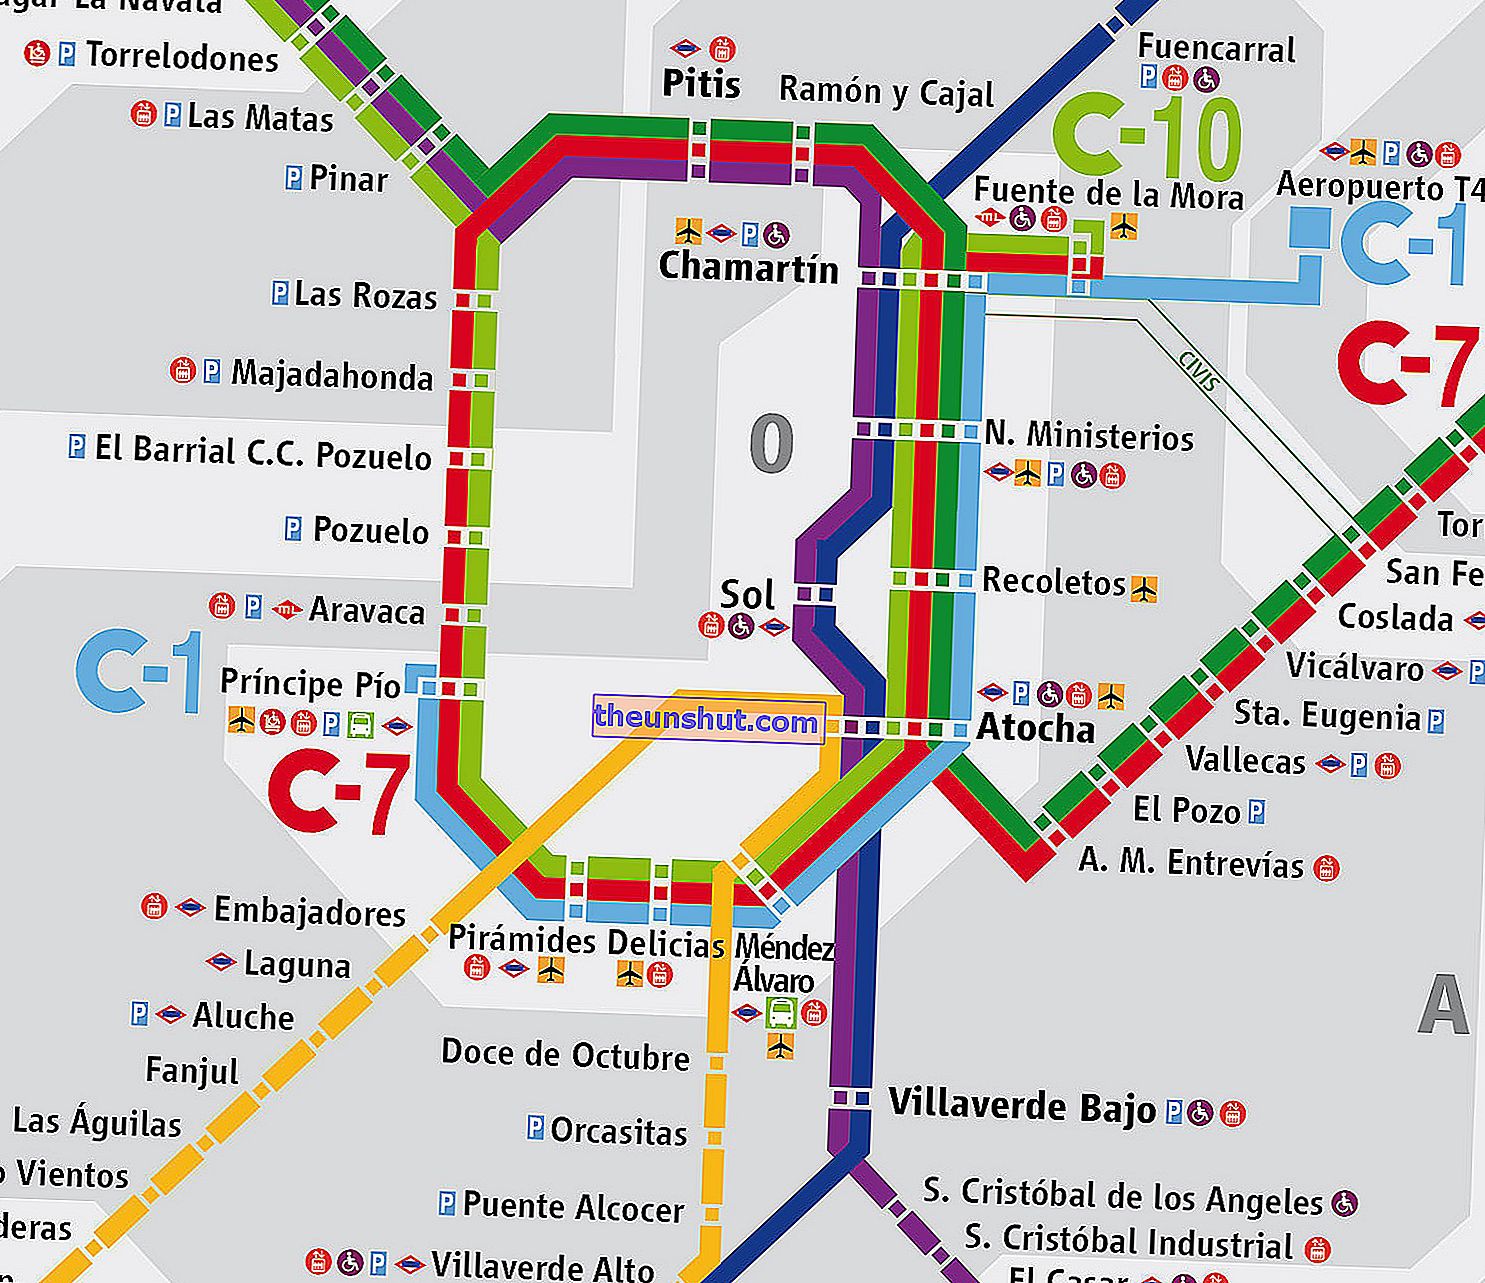 Mappa dei quartieri di Madrid